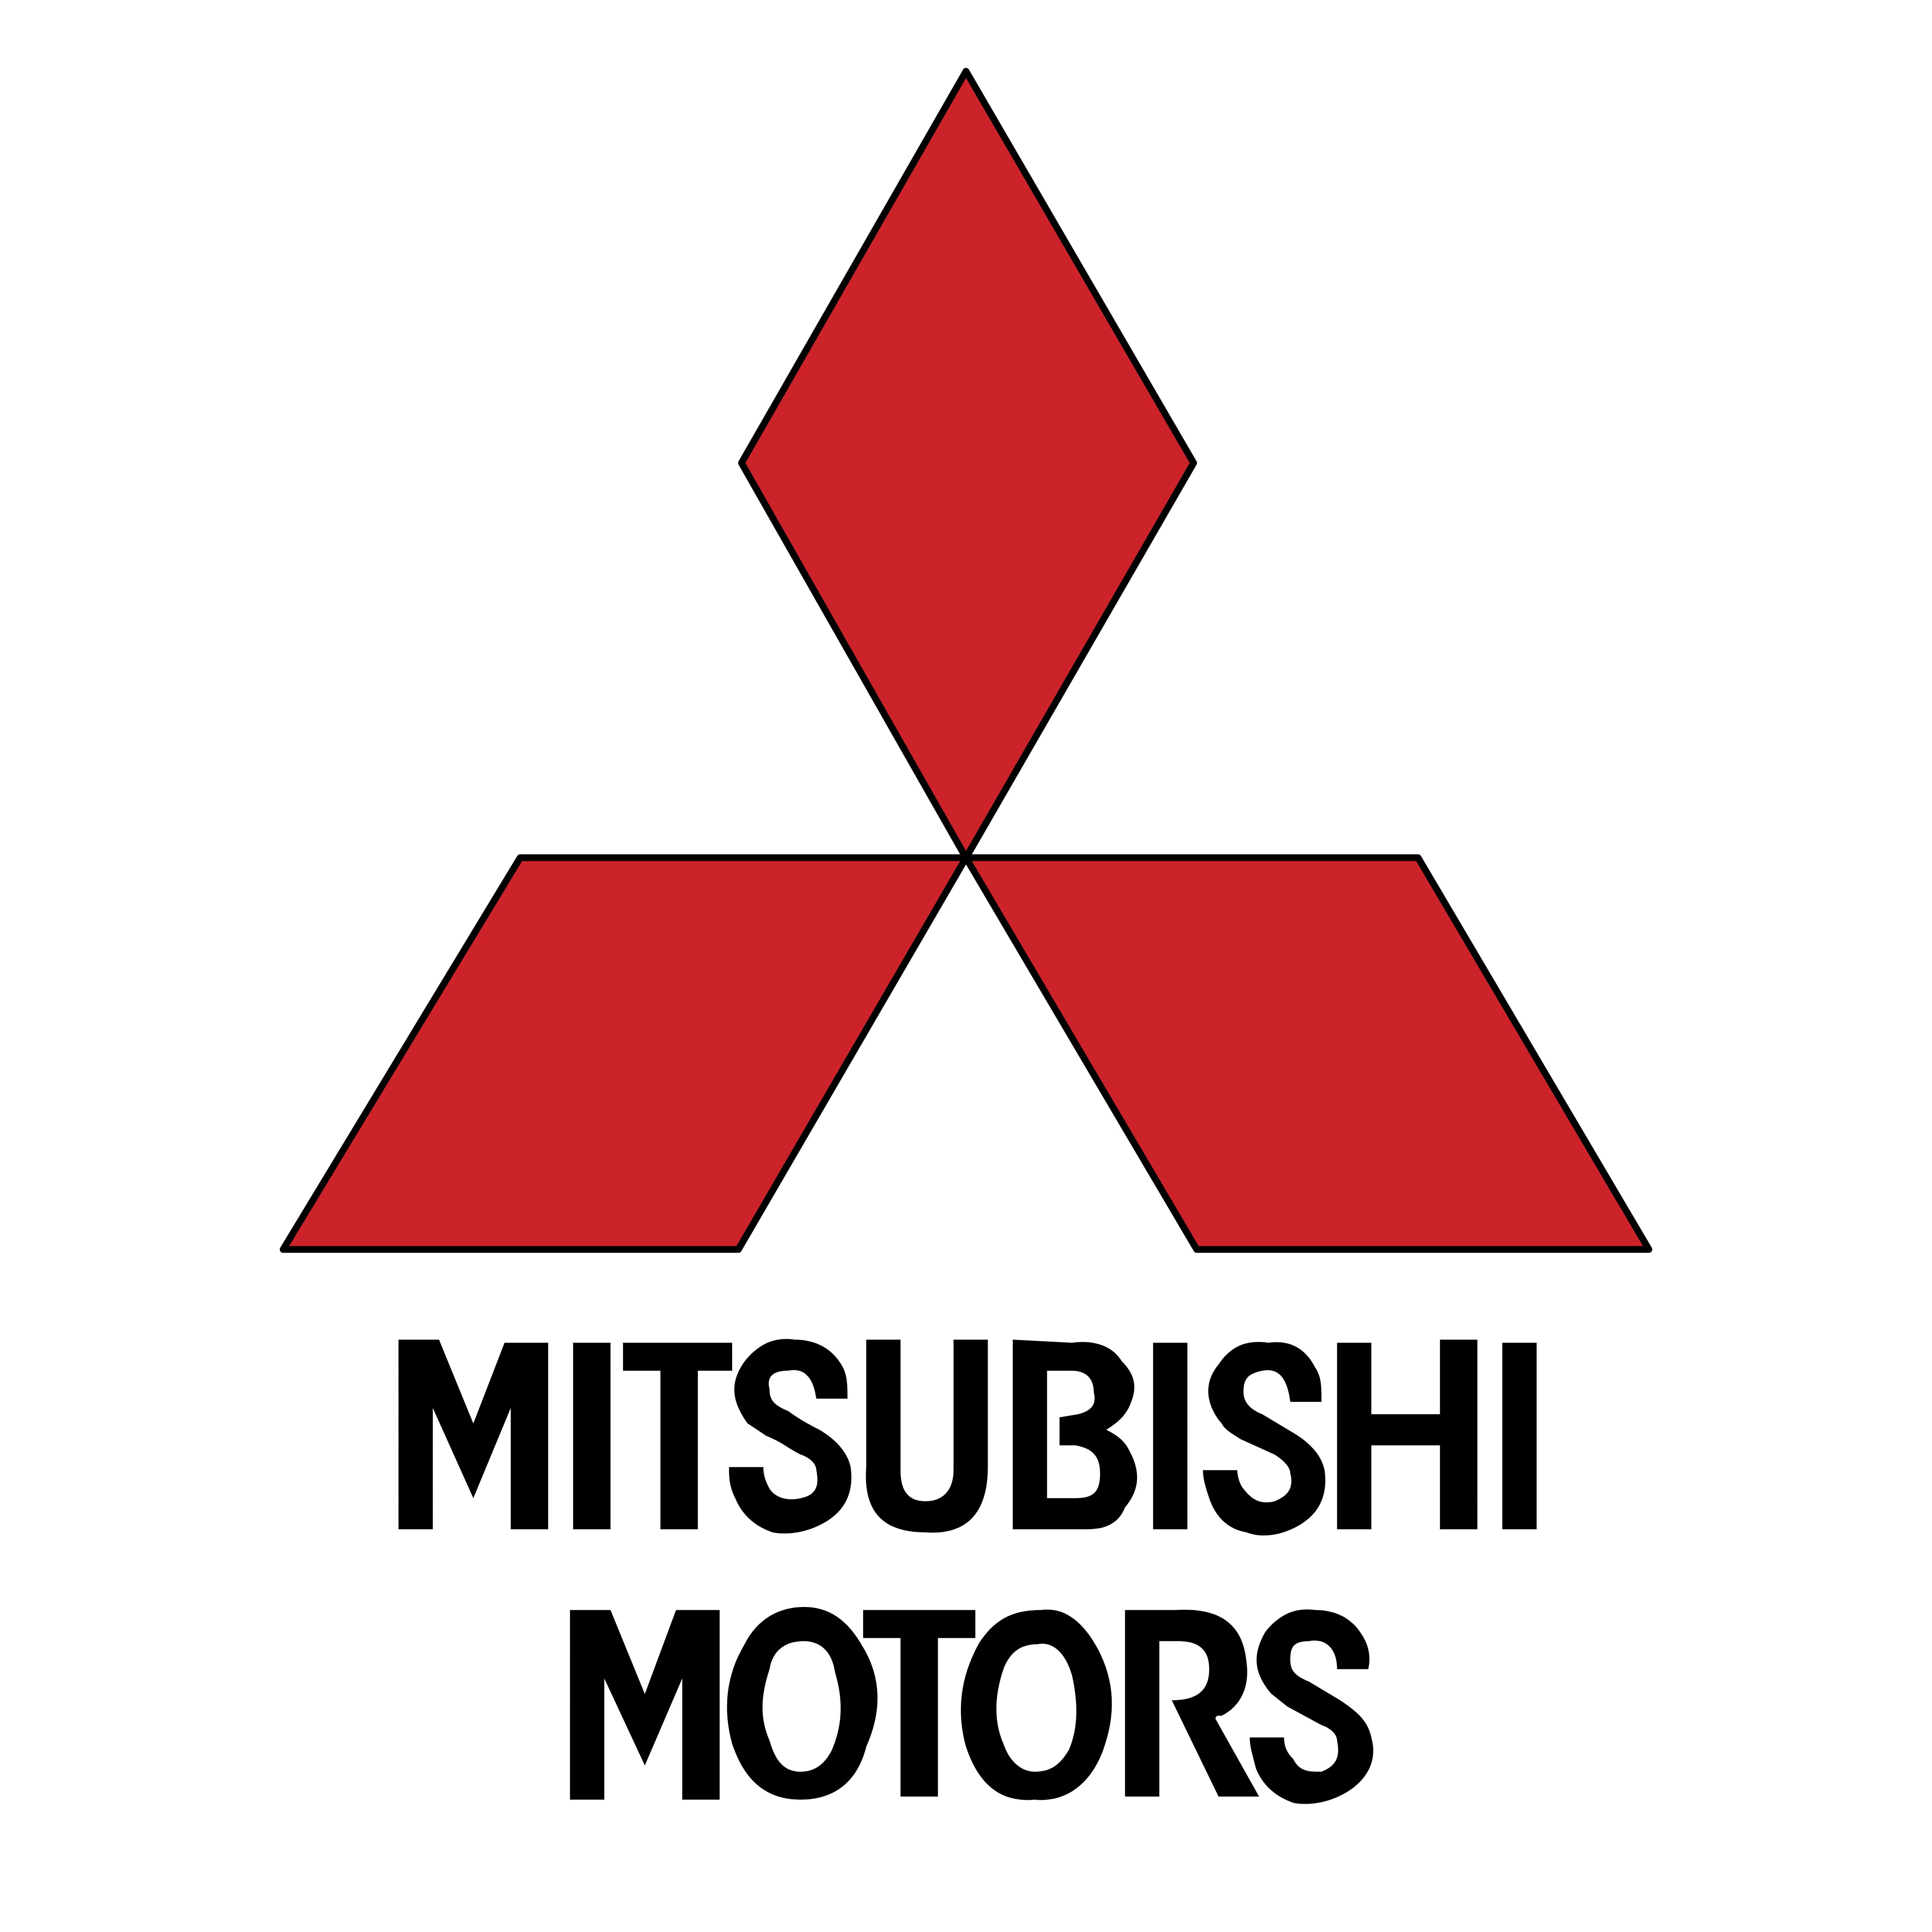 Mitsubishi Heavy industries logo. Mitsubishi Motors Red logo. Значок Мицубиси. Mitsubishi Electric логотип.